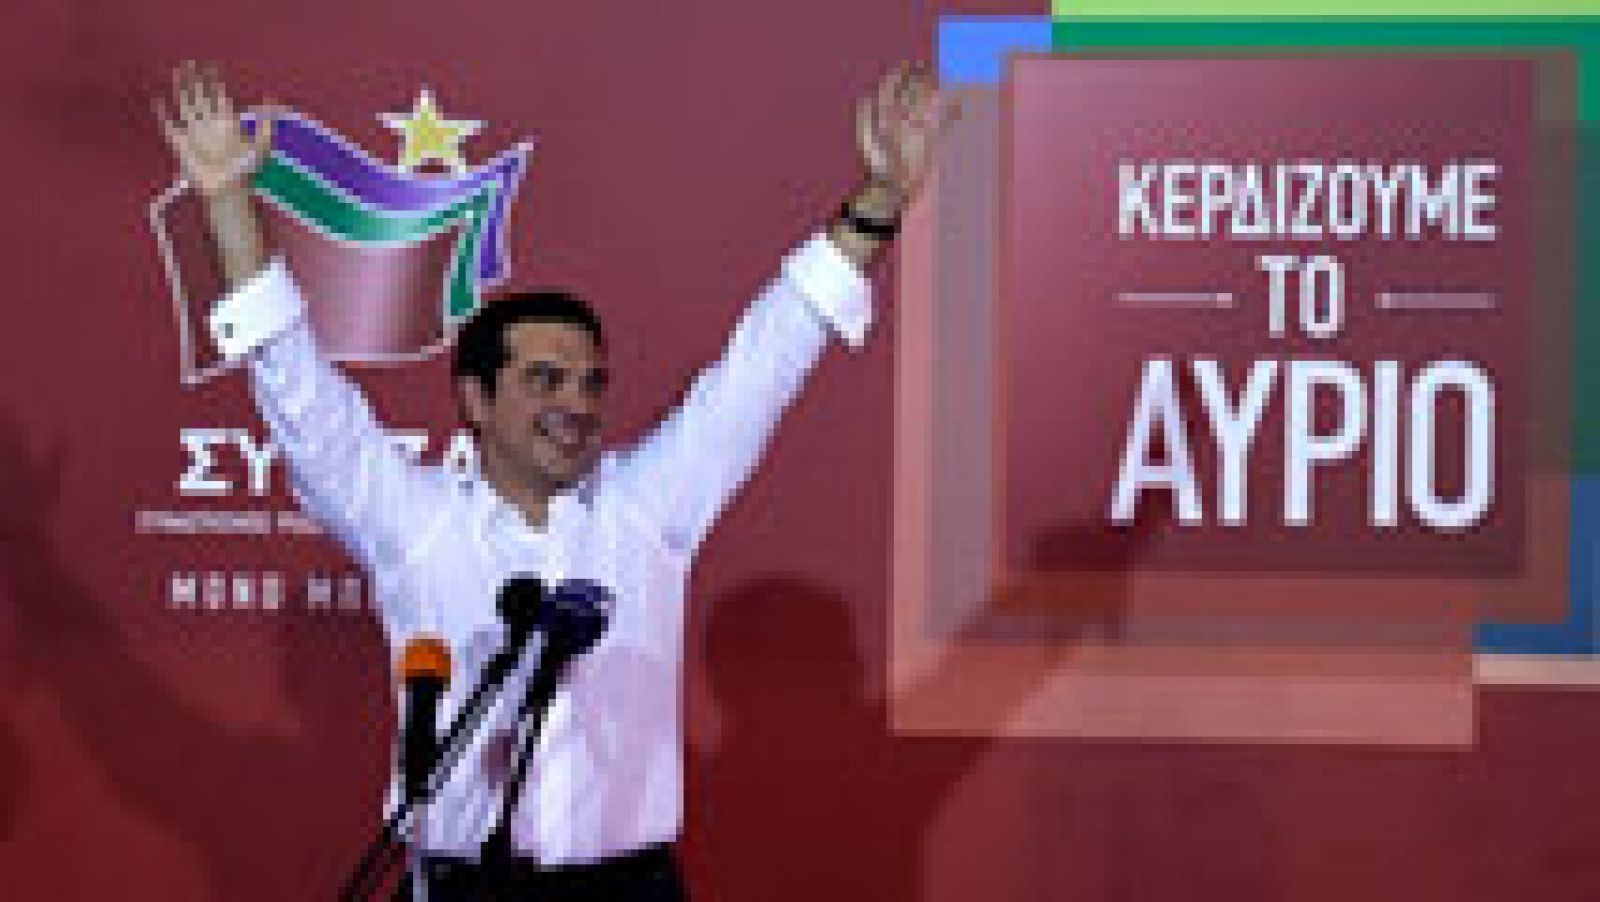 La izquierdista Syriza, liderada por el ex primer ministro Alexis Tsipras, ha reeditado su victoria en las elecciones generales anticipadas celebradas este domingo en Grecia y ha anticipado que volver a gobernar con los nacionalistas de derechas Griegos Independientes (ANEL), un escenario casi calcado al de los comicios de enero. Poco despus del cierre de las urnas, el lder conservadores de Nueva Democracia (ND), Vanguelis Meimarakis, ha reconocido su derrota. Syriza obtiene un 35,6% de los votos y 145 escaos. La mayora absoluta son 151. En enero obtuvo 149 (aunque en agosto una escisin redujo su grupo en 25 diputados).